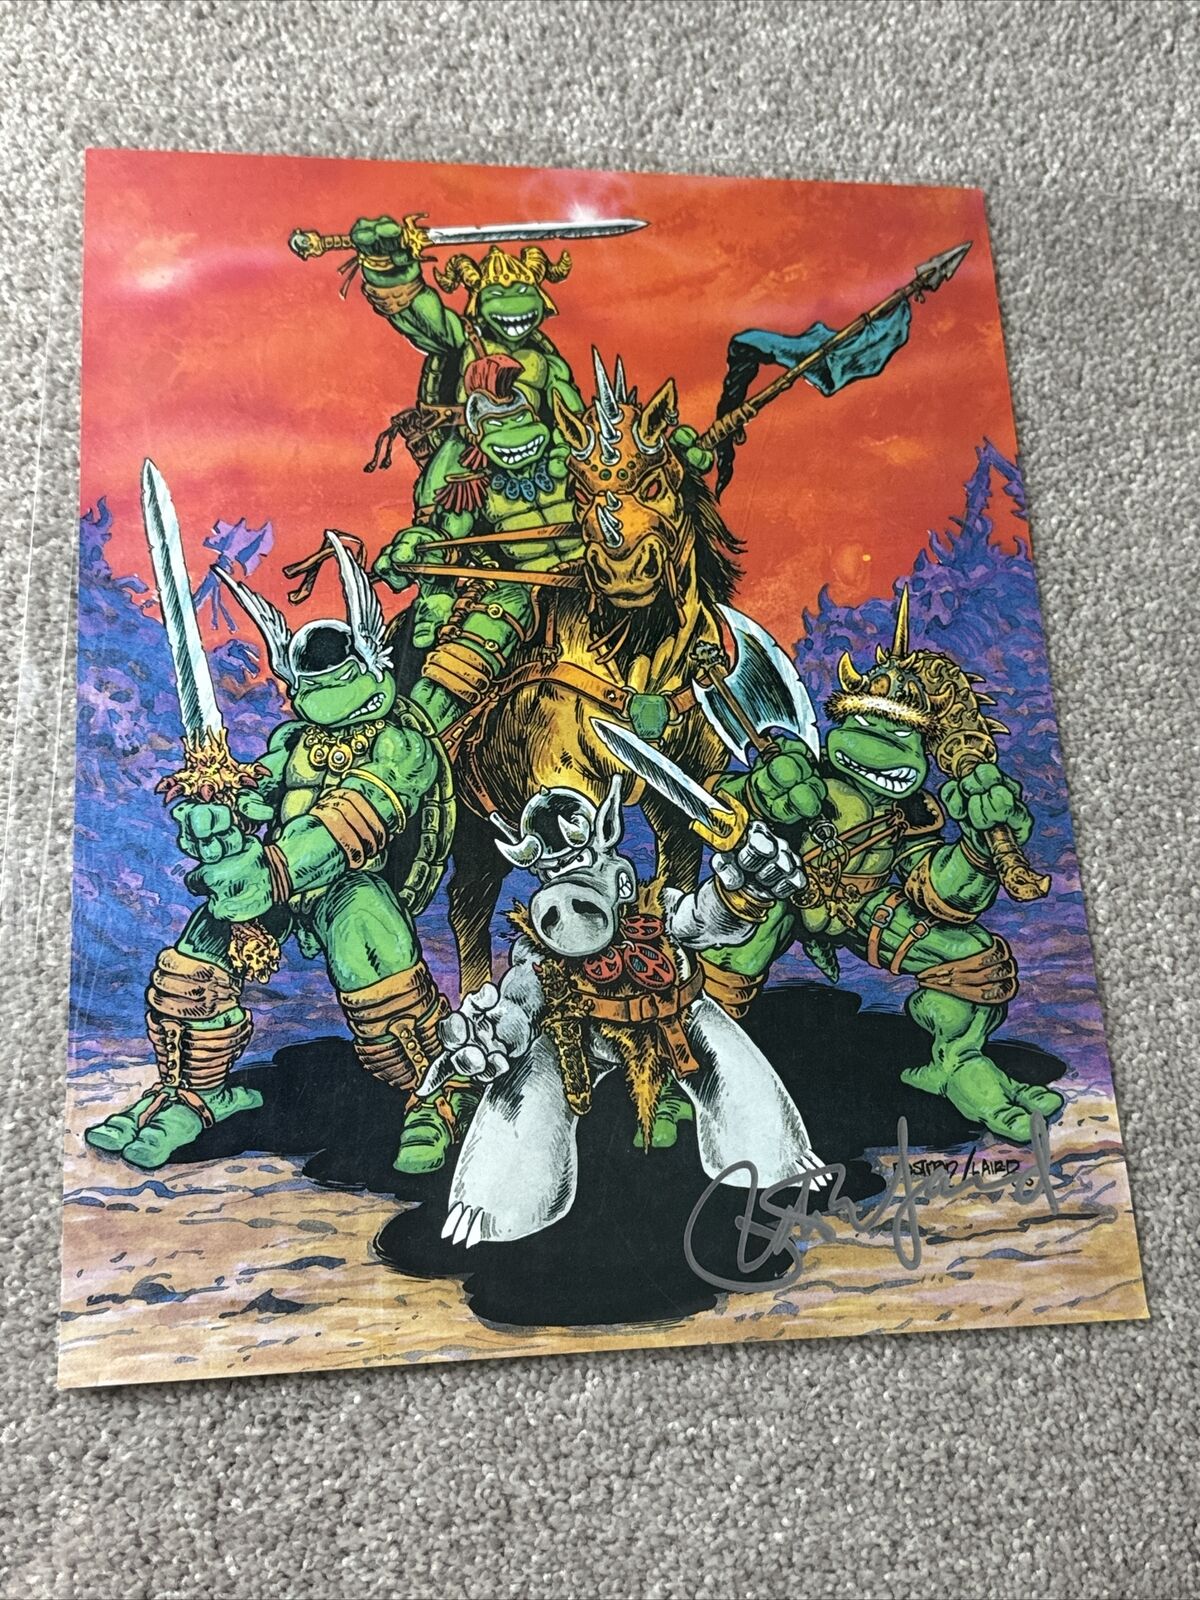 Vintage Teenage Mutant Ninja Turtles Cerebus TMNT #8 Poster 1986 SIGNED by Laird